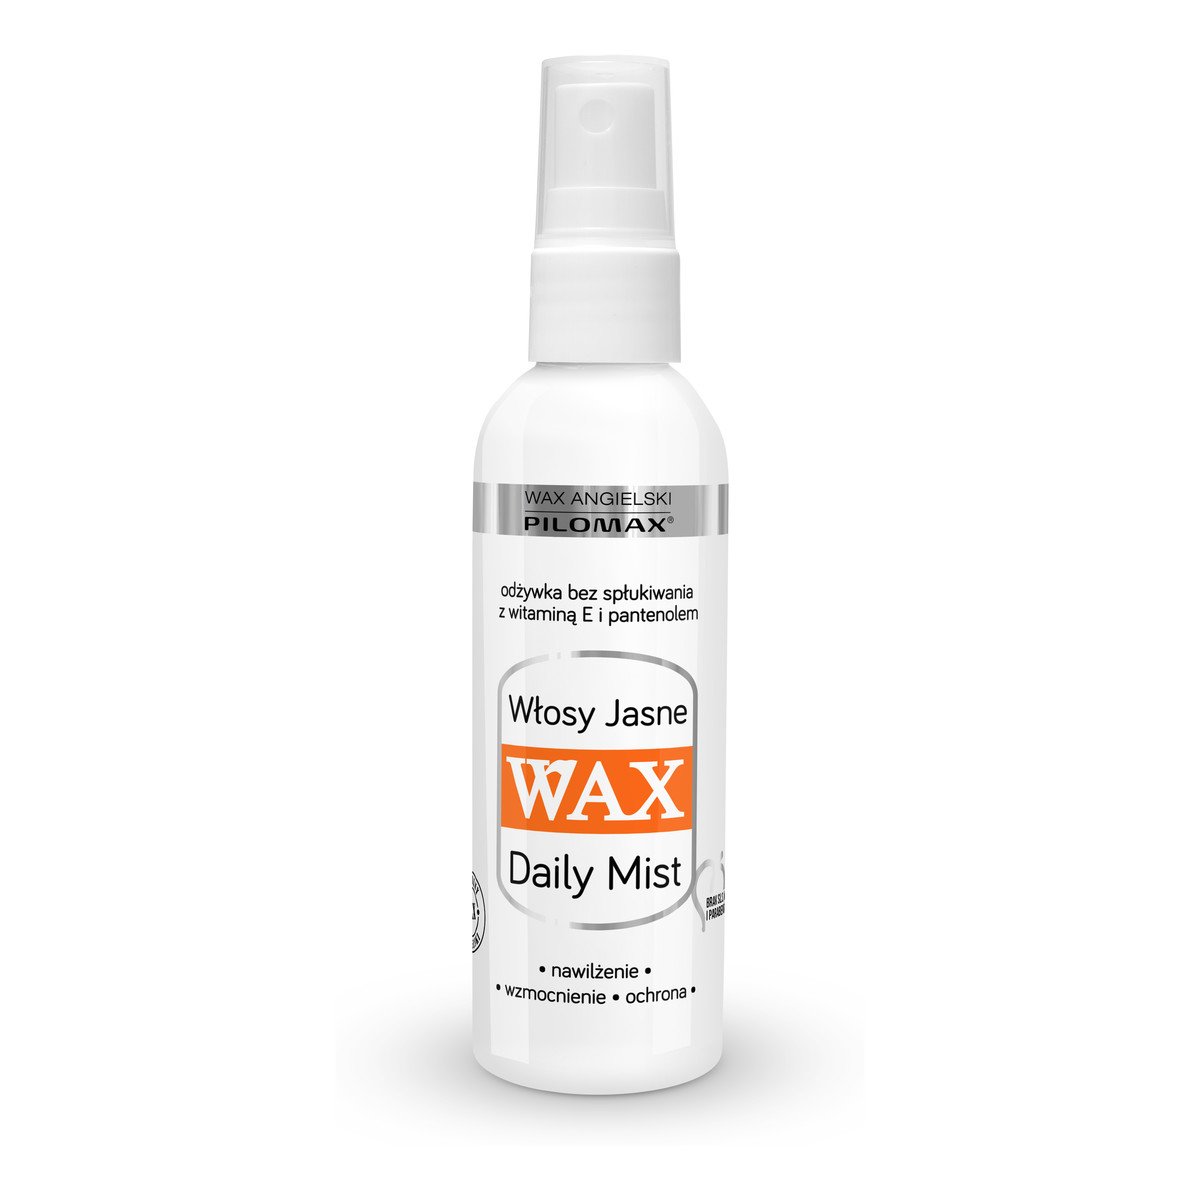 Pilomax Wax Daily Mist Odżywka Bez Spłukiwania Do Włosów Jasnych 100ml